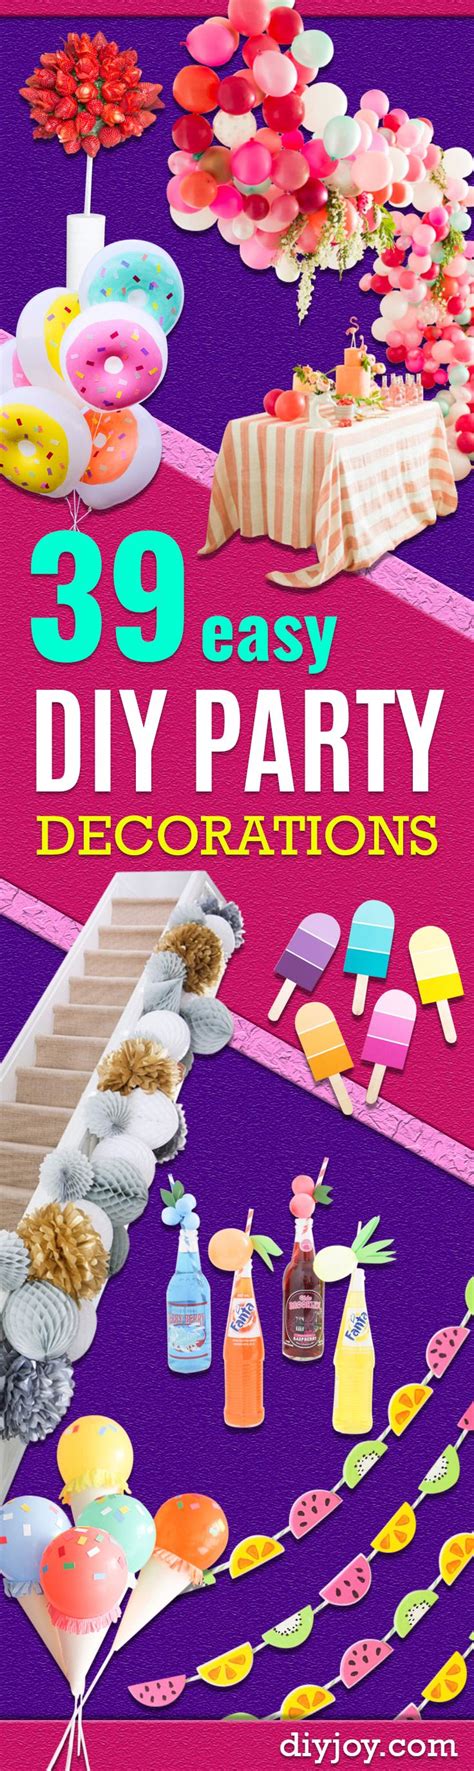 39 Easy Diy Party Decorations Diy Party Decorations Cheap Party Decorations Diy Birthday